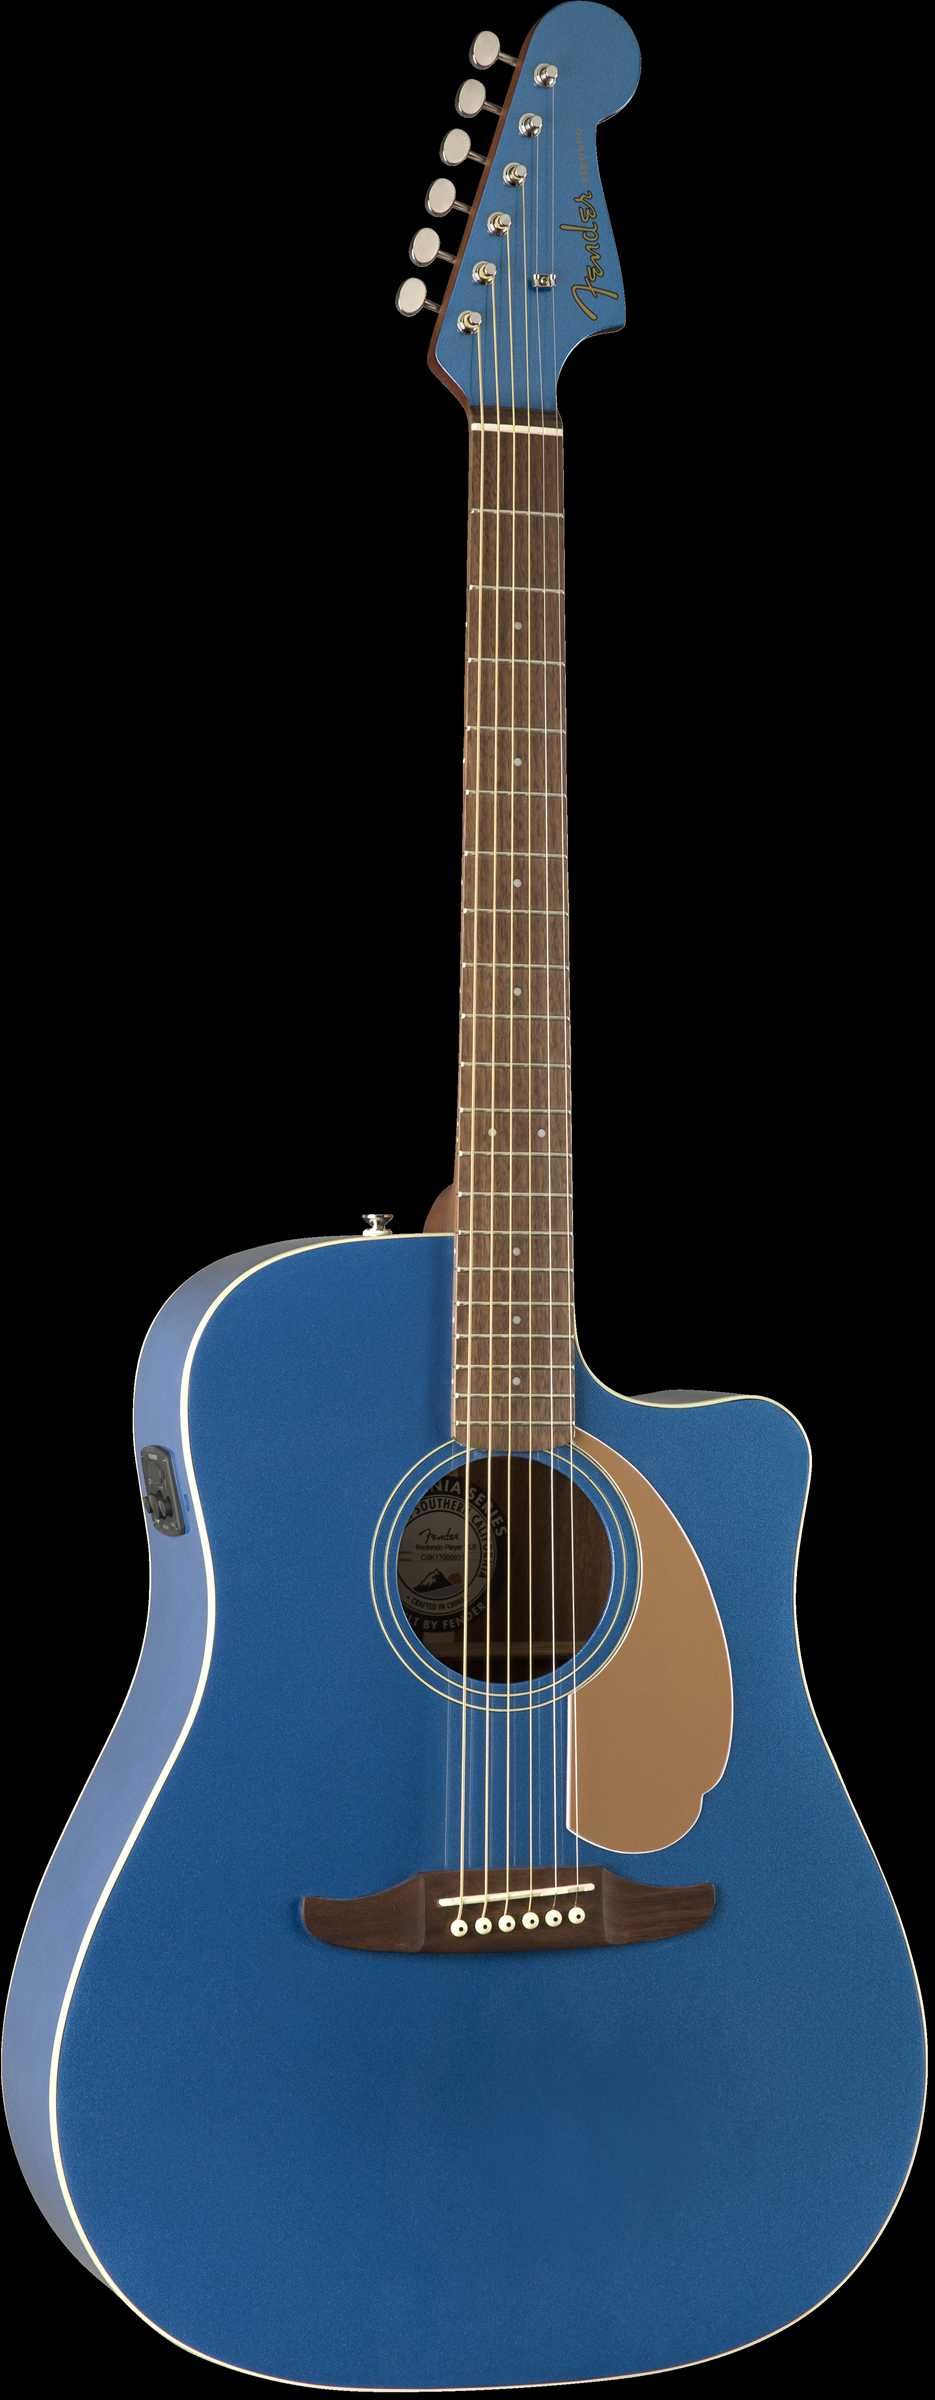 Gitara elektro akustyczna FENDER Redondo Blue